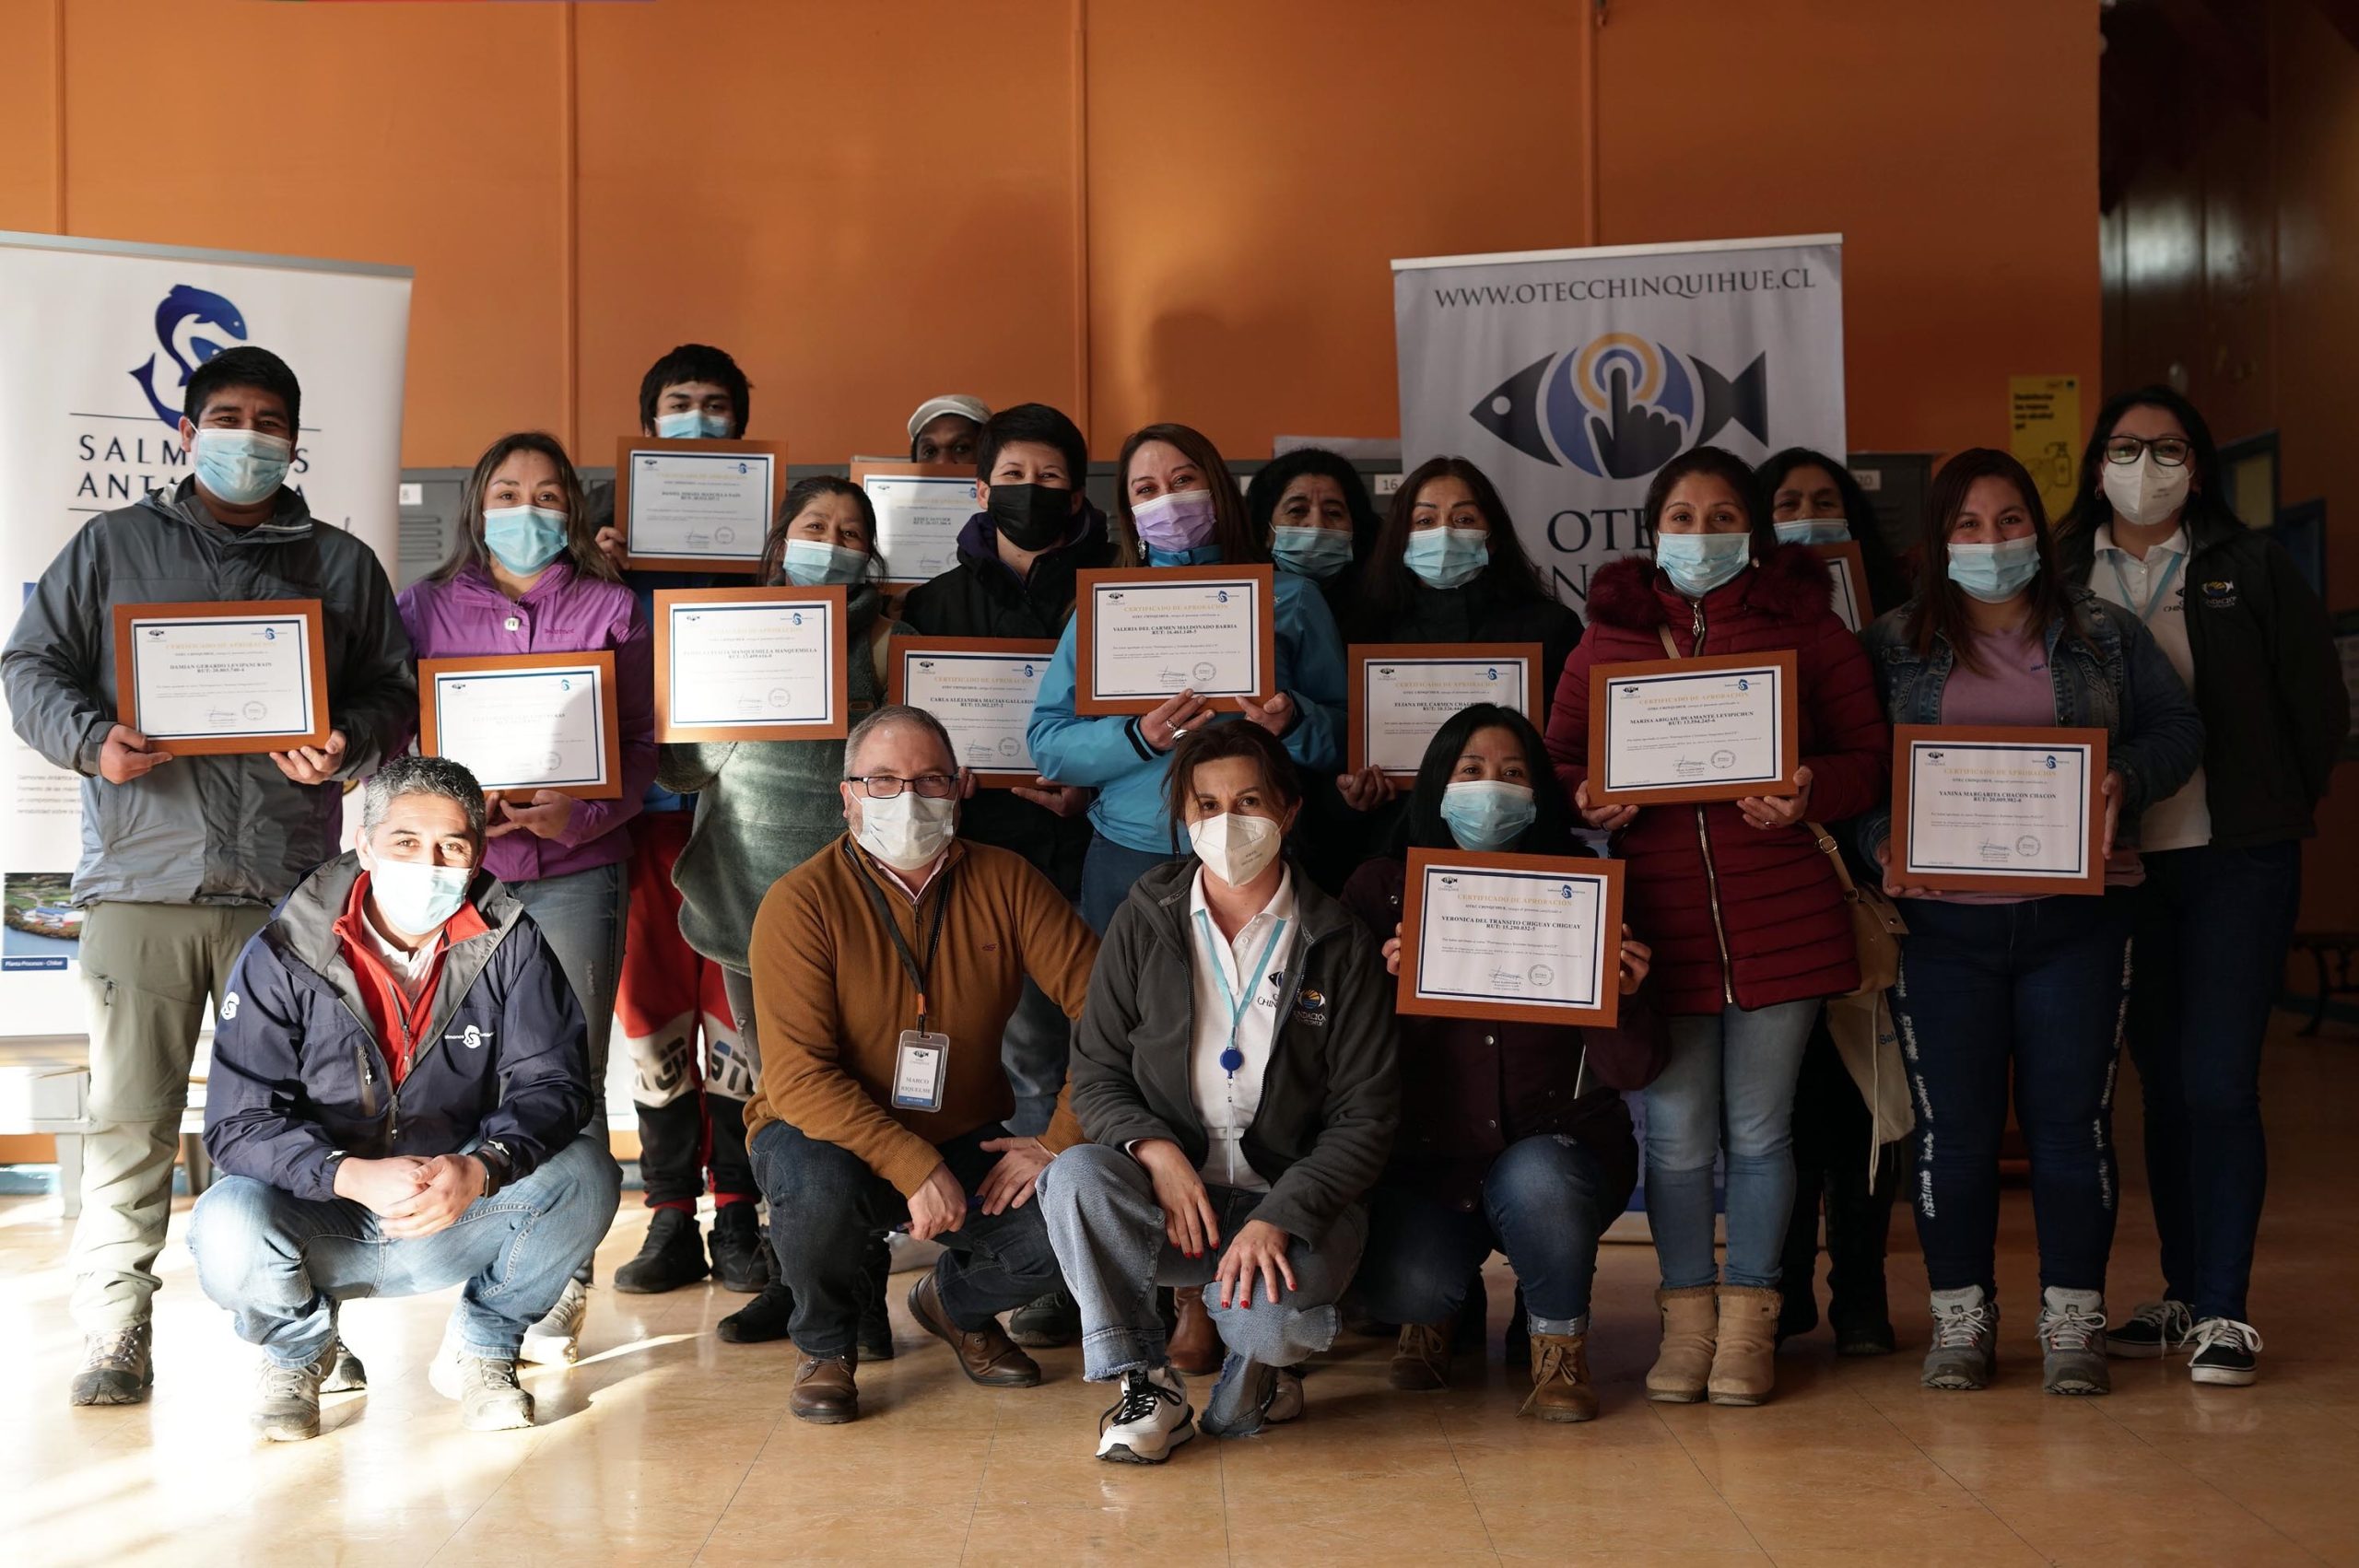 OTEC Chinquihue y Salmones Antártica capacitan a 600 trabajadores en Chiloé